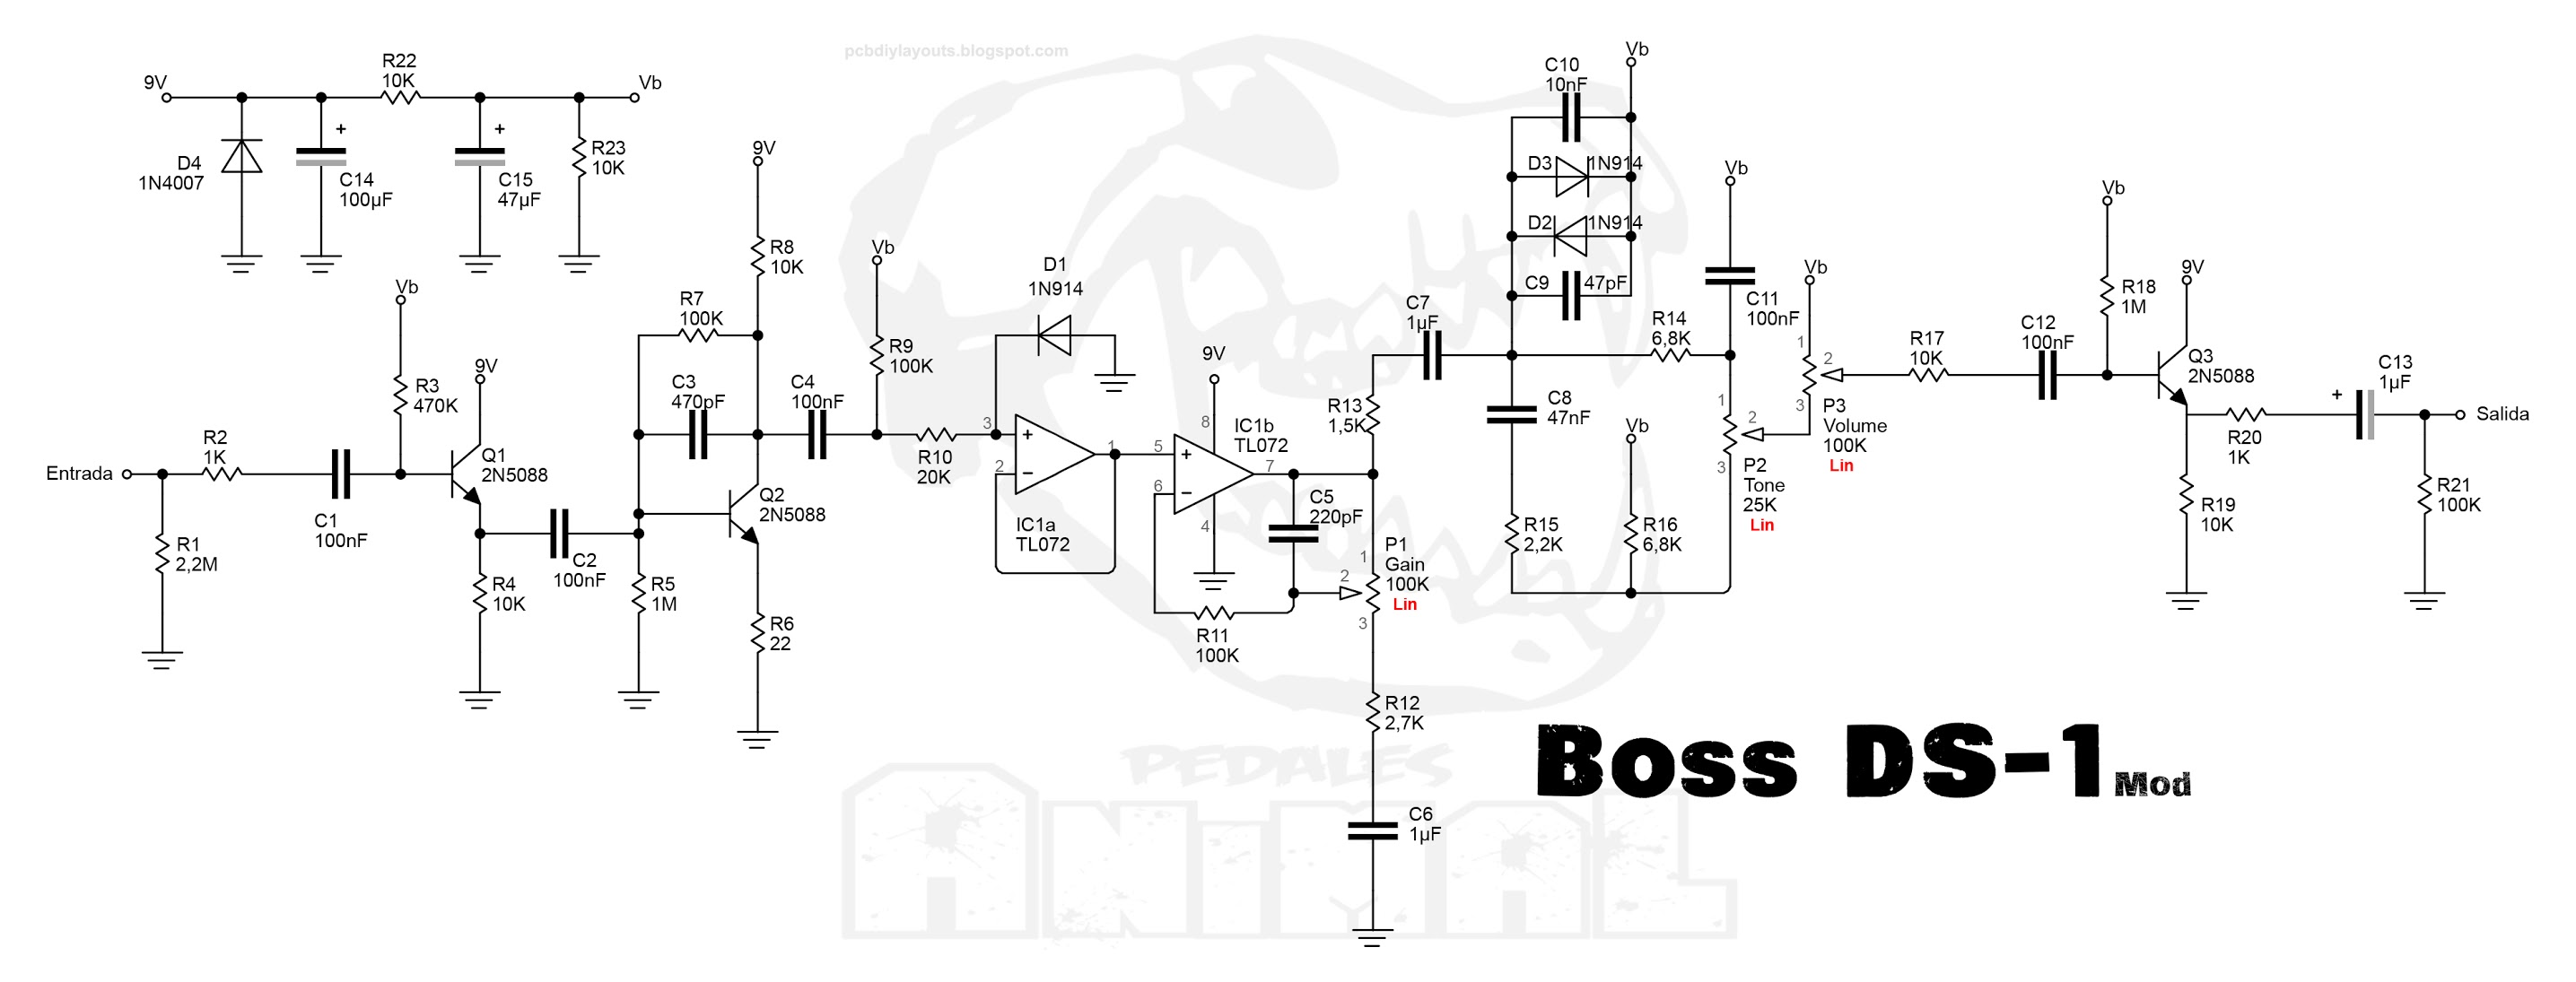 Boss DS-1 Mod